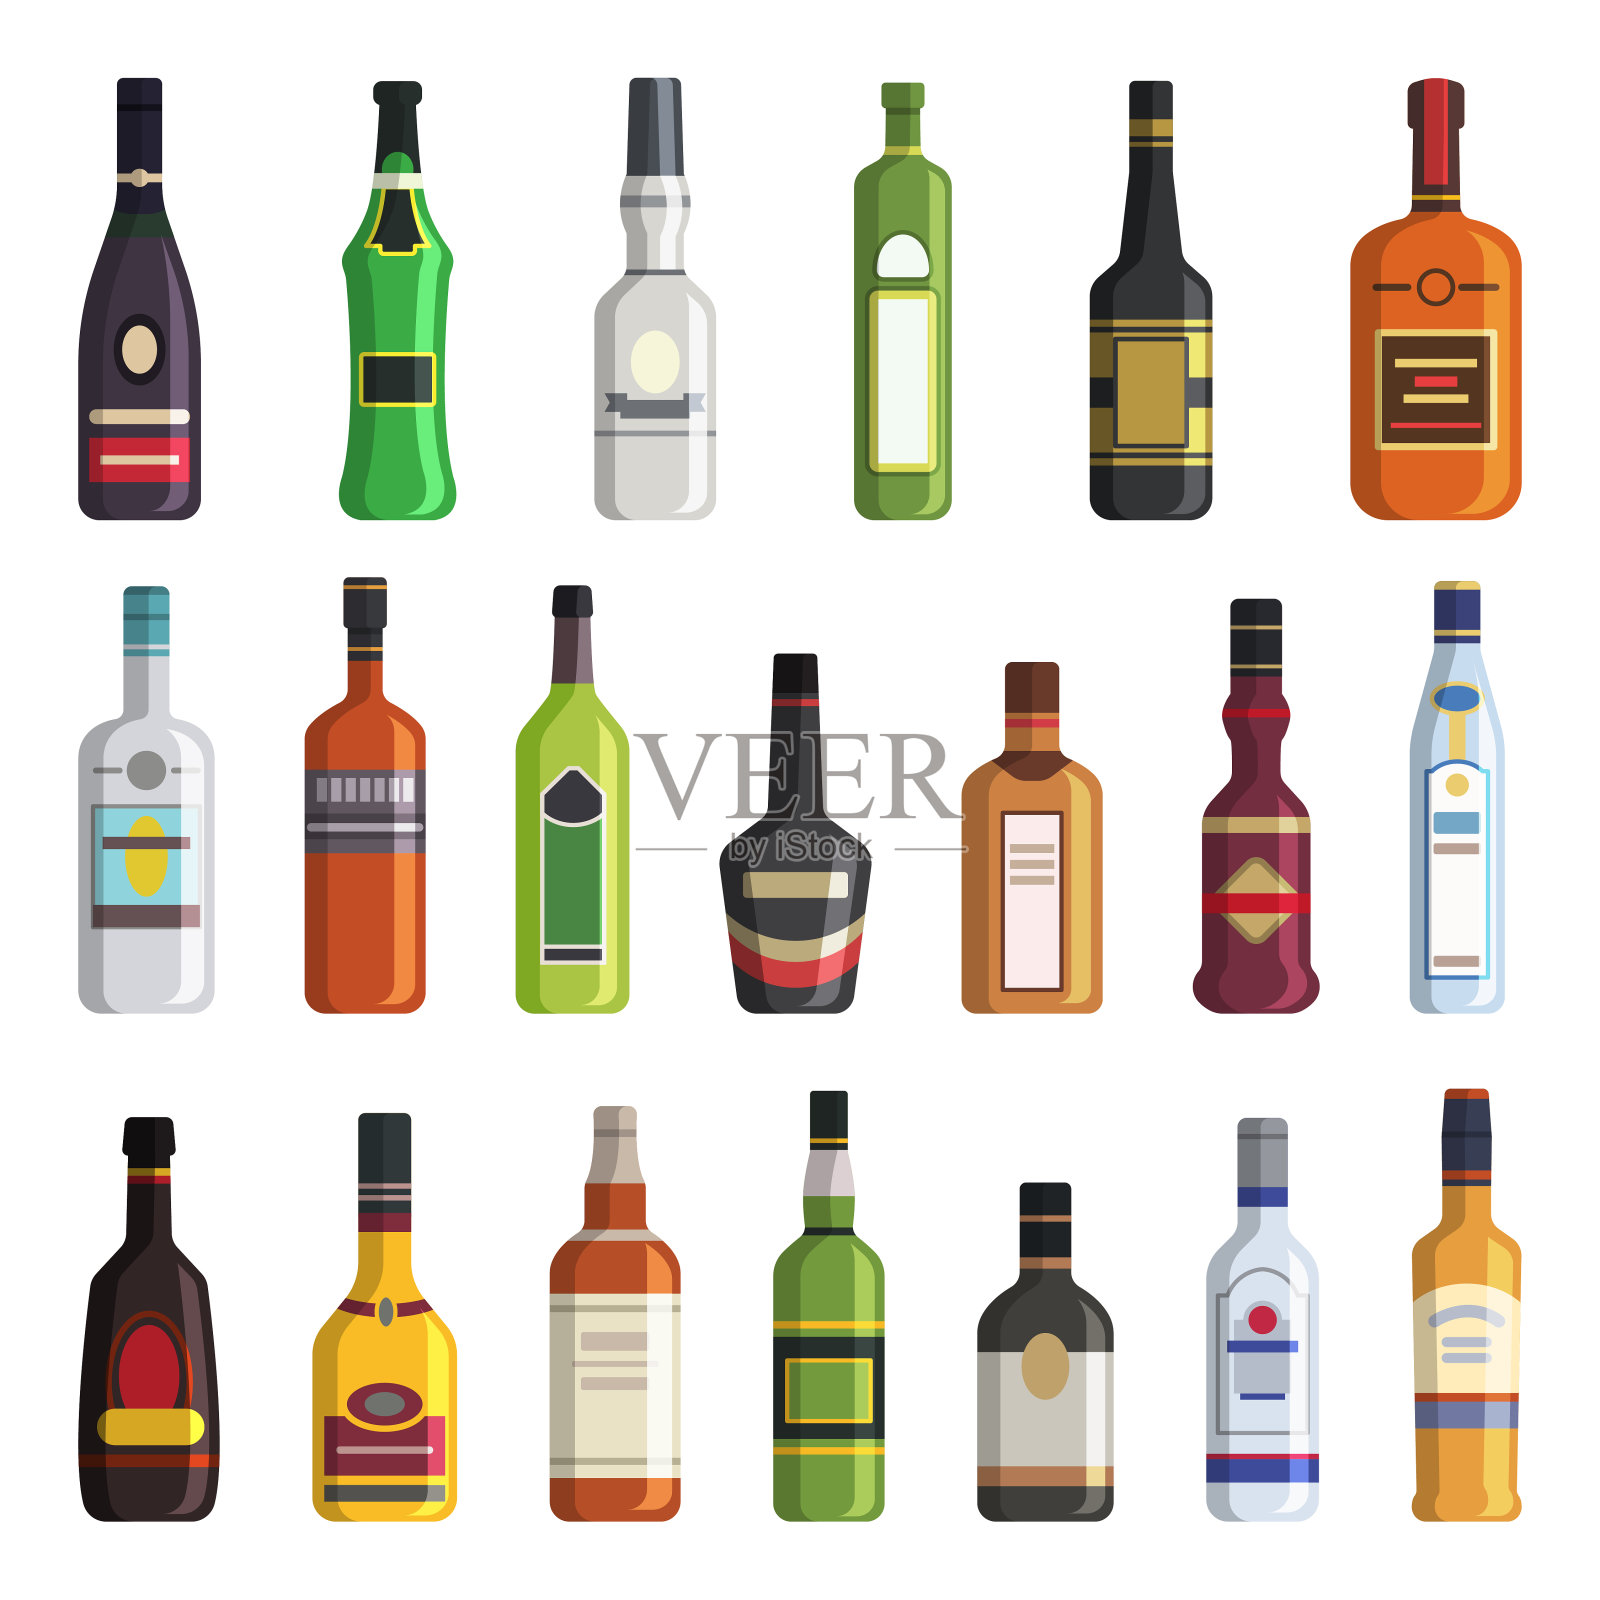 利口酒、威士忌、伏特加等瓶装酒精饮料。平面风格的矢量图片设计元素图片